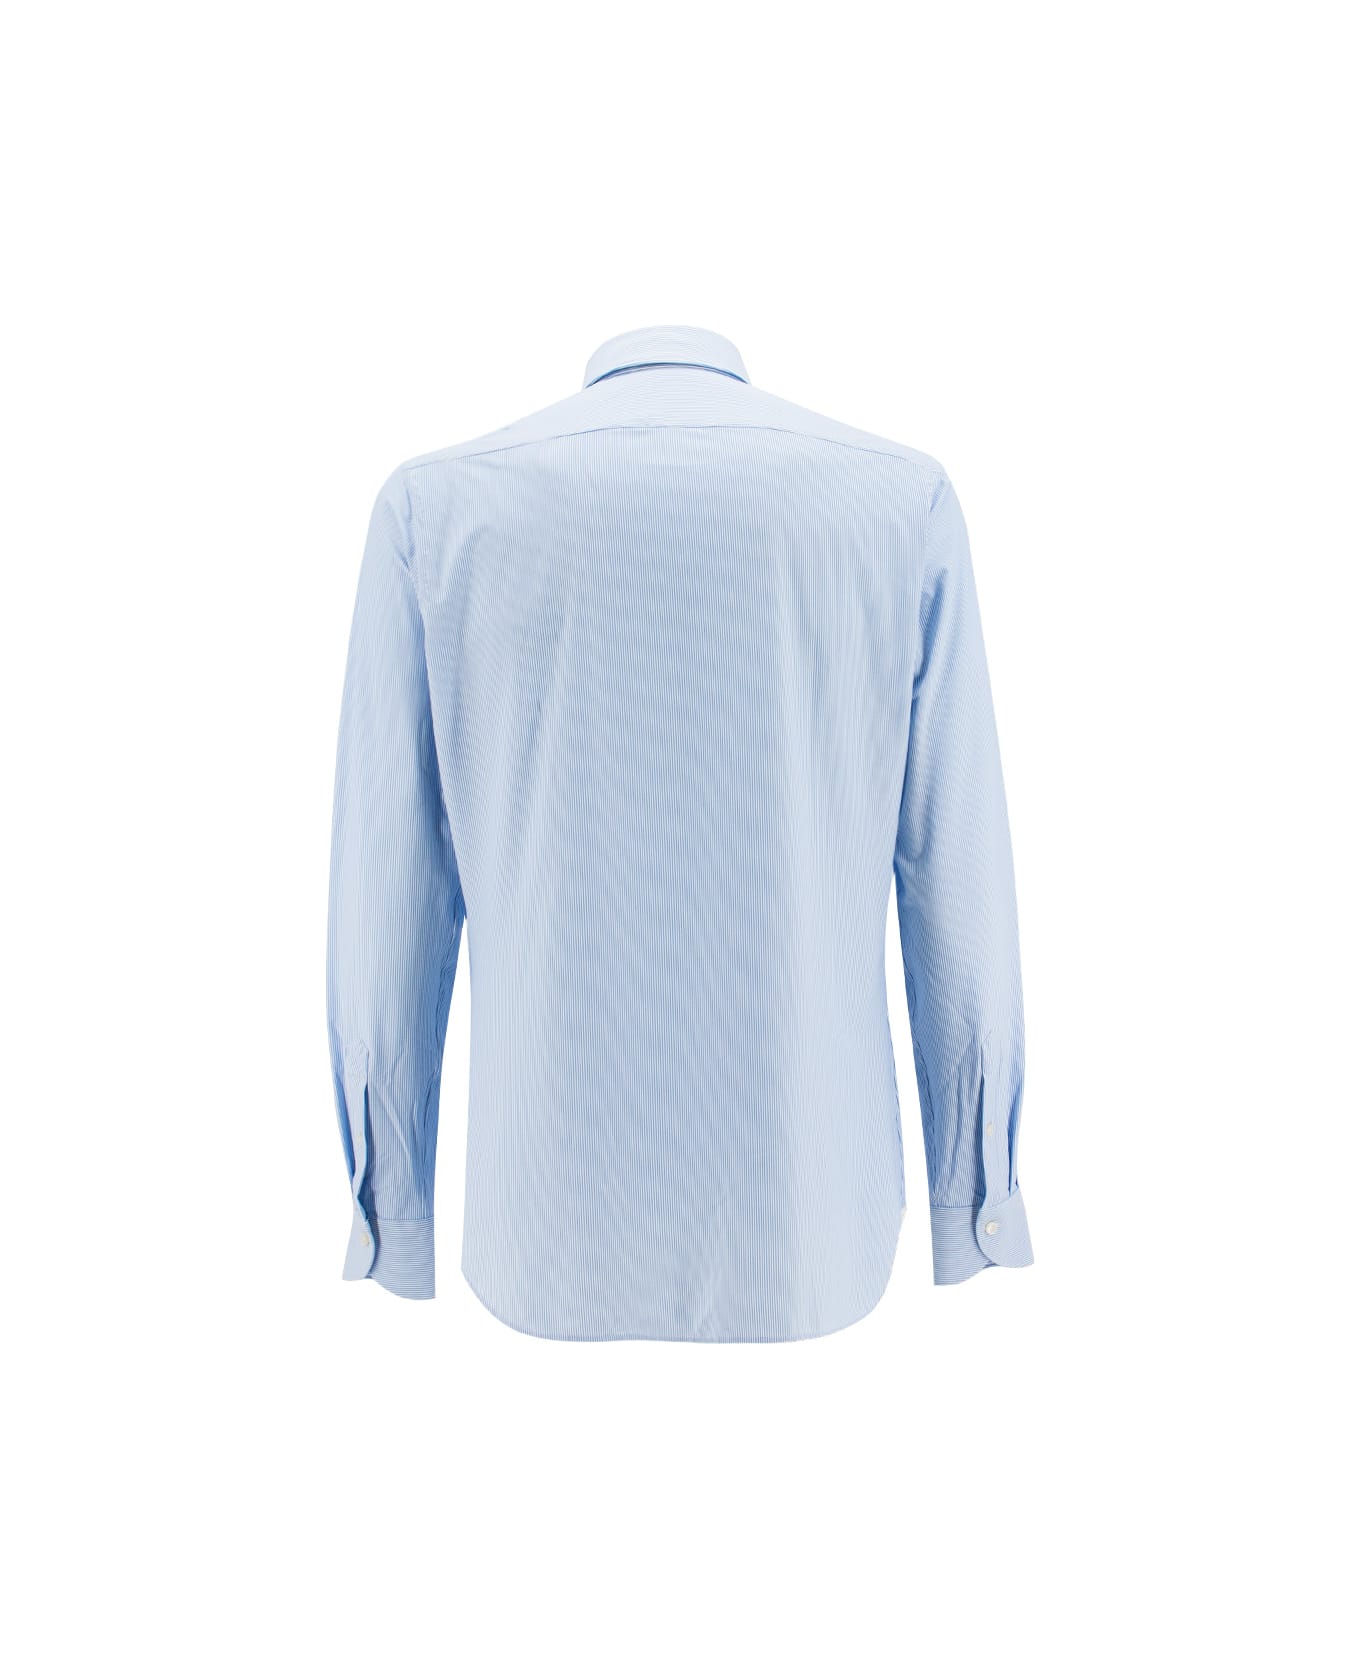 Xacus Shirt - STRIPE BLUE  WHITE